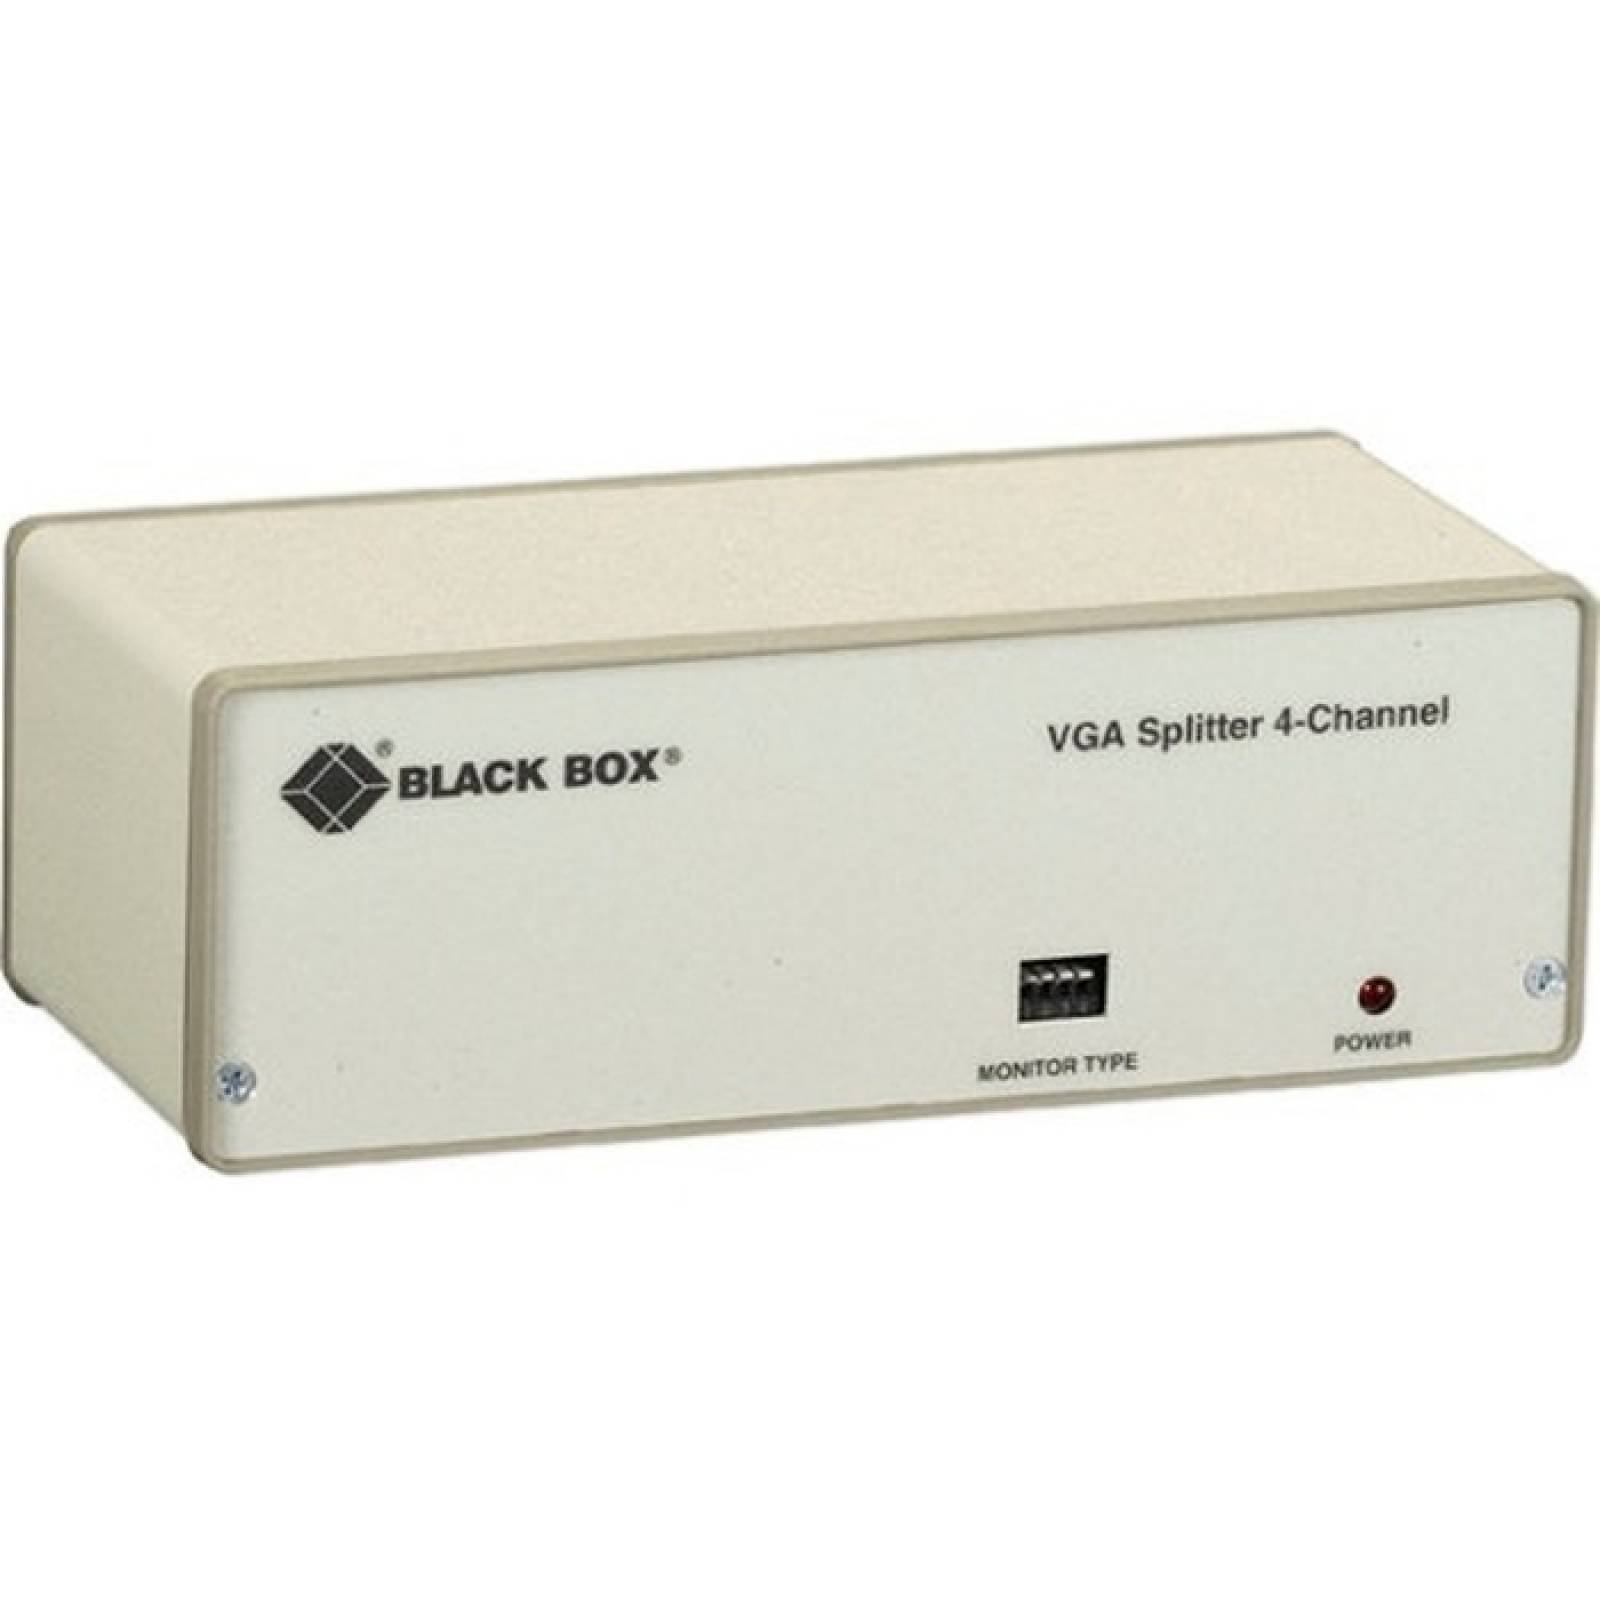 Divisor de video de 4 canales VGA Black Box 115VAC